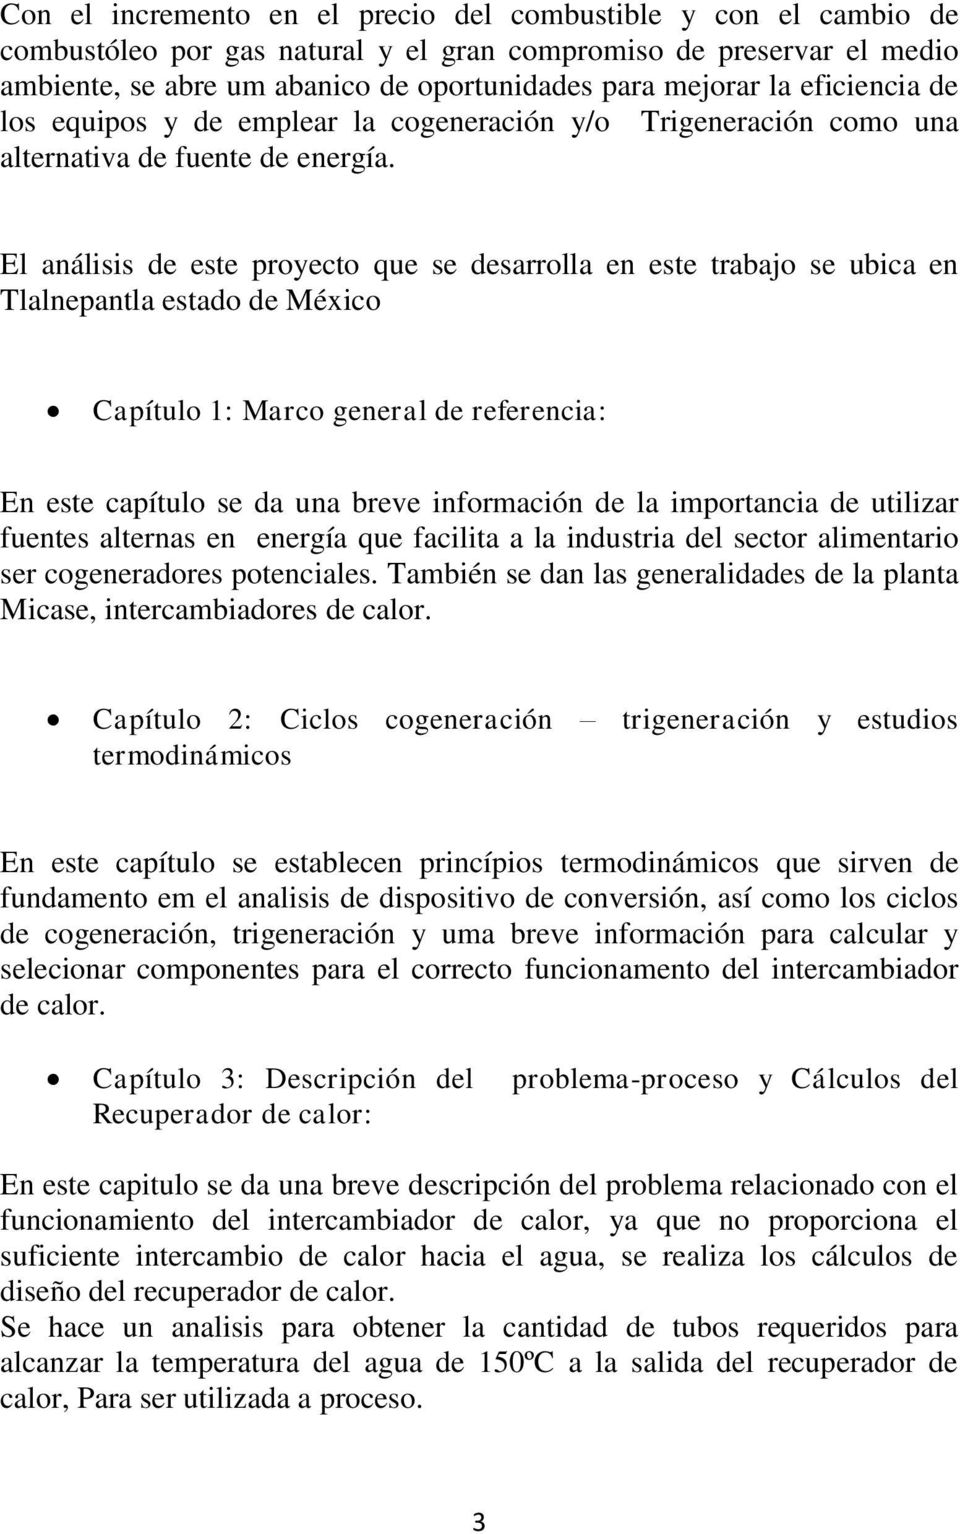 El análisis de este proyecto que se desarrolla en este trabajo se ubica en Tlalnepantla estado de México Capítulo 1: Marco general de referencia: En este capítulo se da una breve información de la